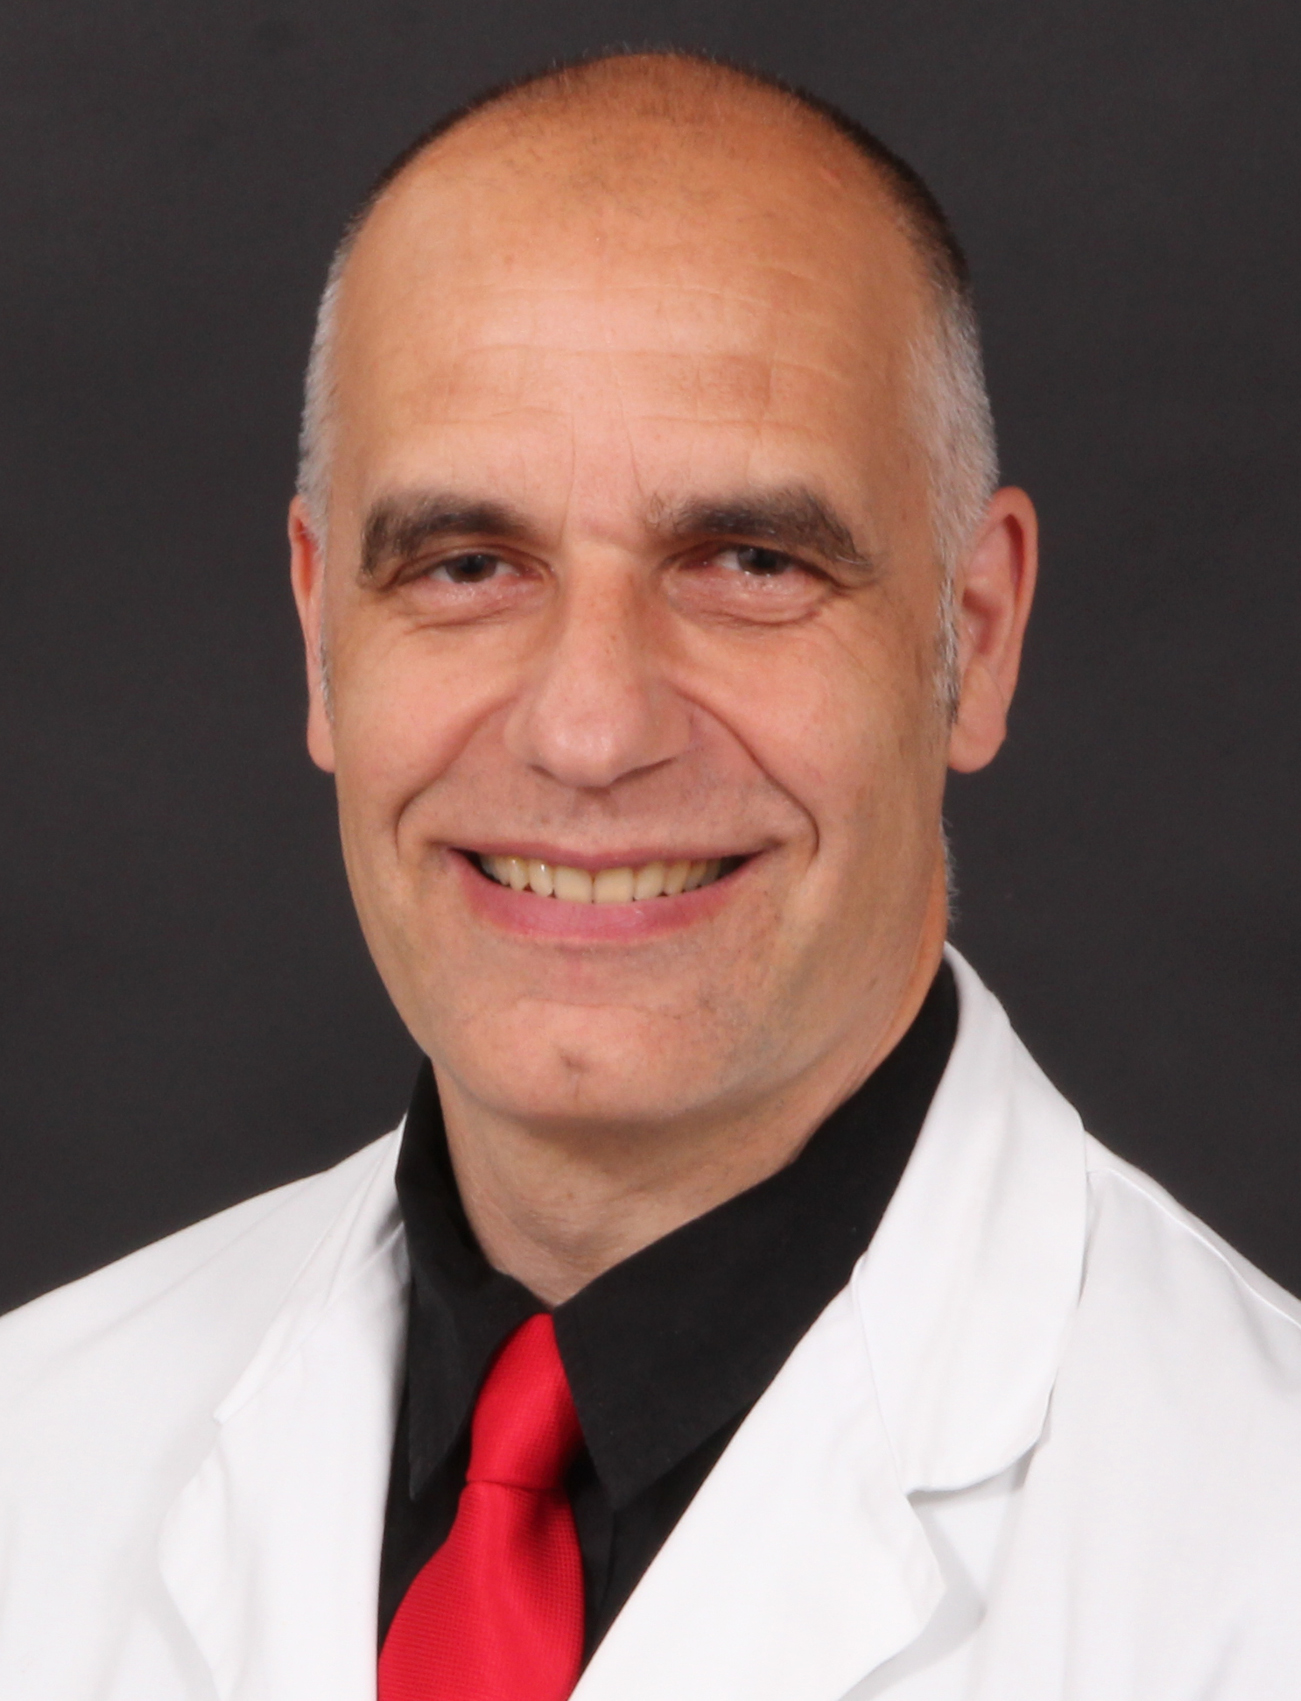 Prof. Leopold Eberhart, stellvertretender Direktor der Klinik für Anästhesie und Intensivtherapie am Universitätsklinikum Marburg, 